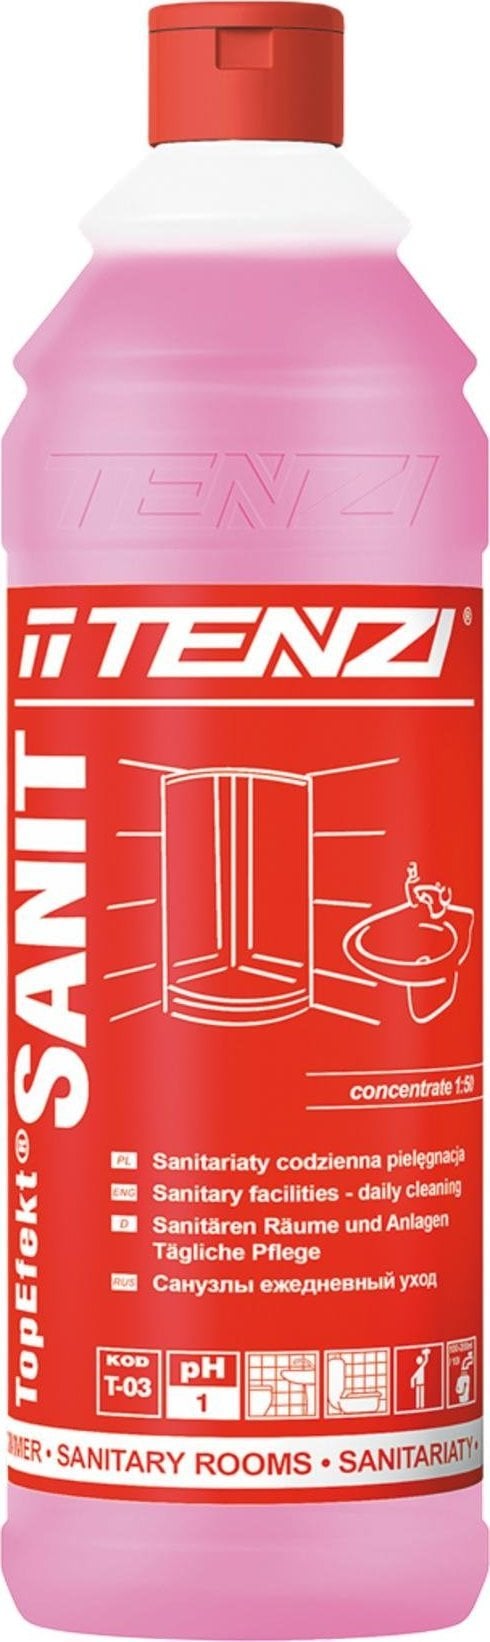 Tenzi TZ-TESANIT Agent gel concentrat pentru curățarea zilnică a încăperilor și a instalațiilor sanitare